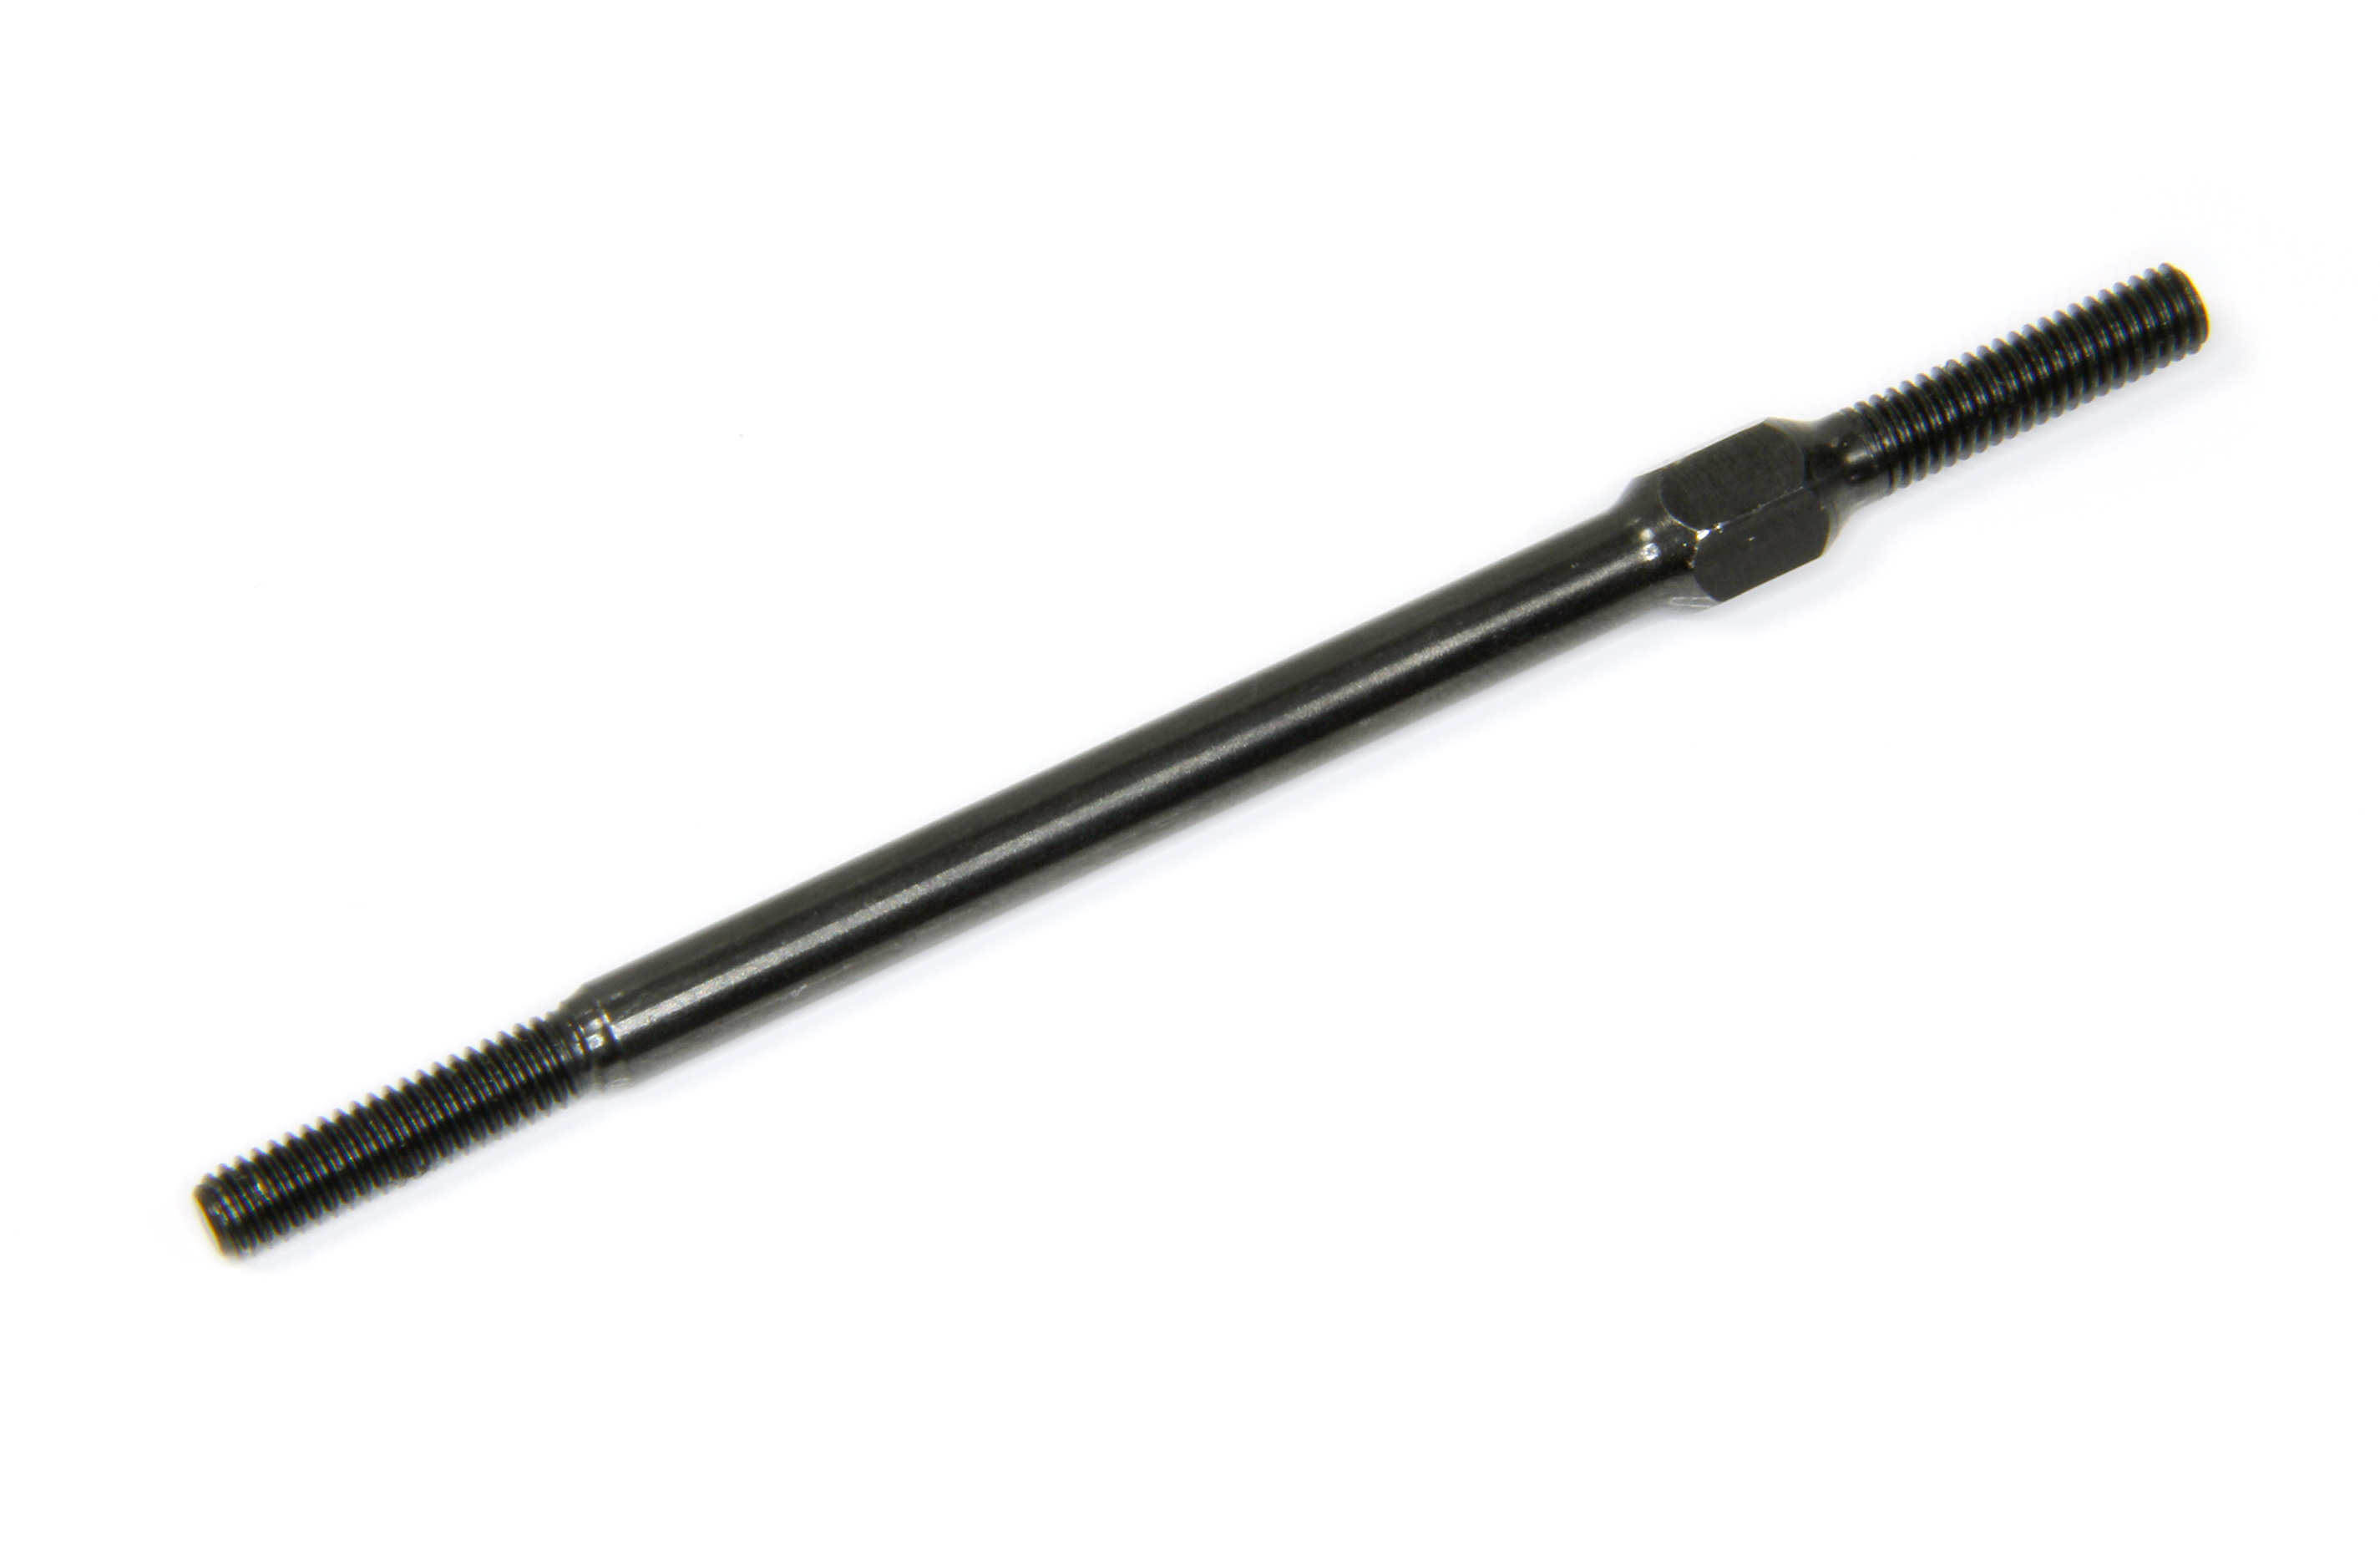 2012-64 Mecatech Steearing Rod 94 mm